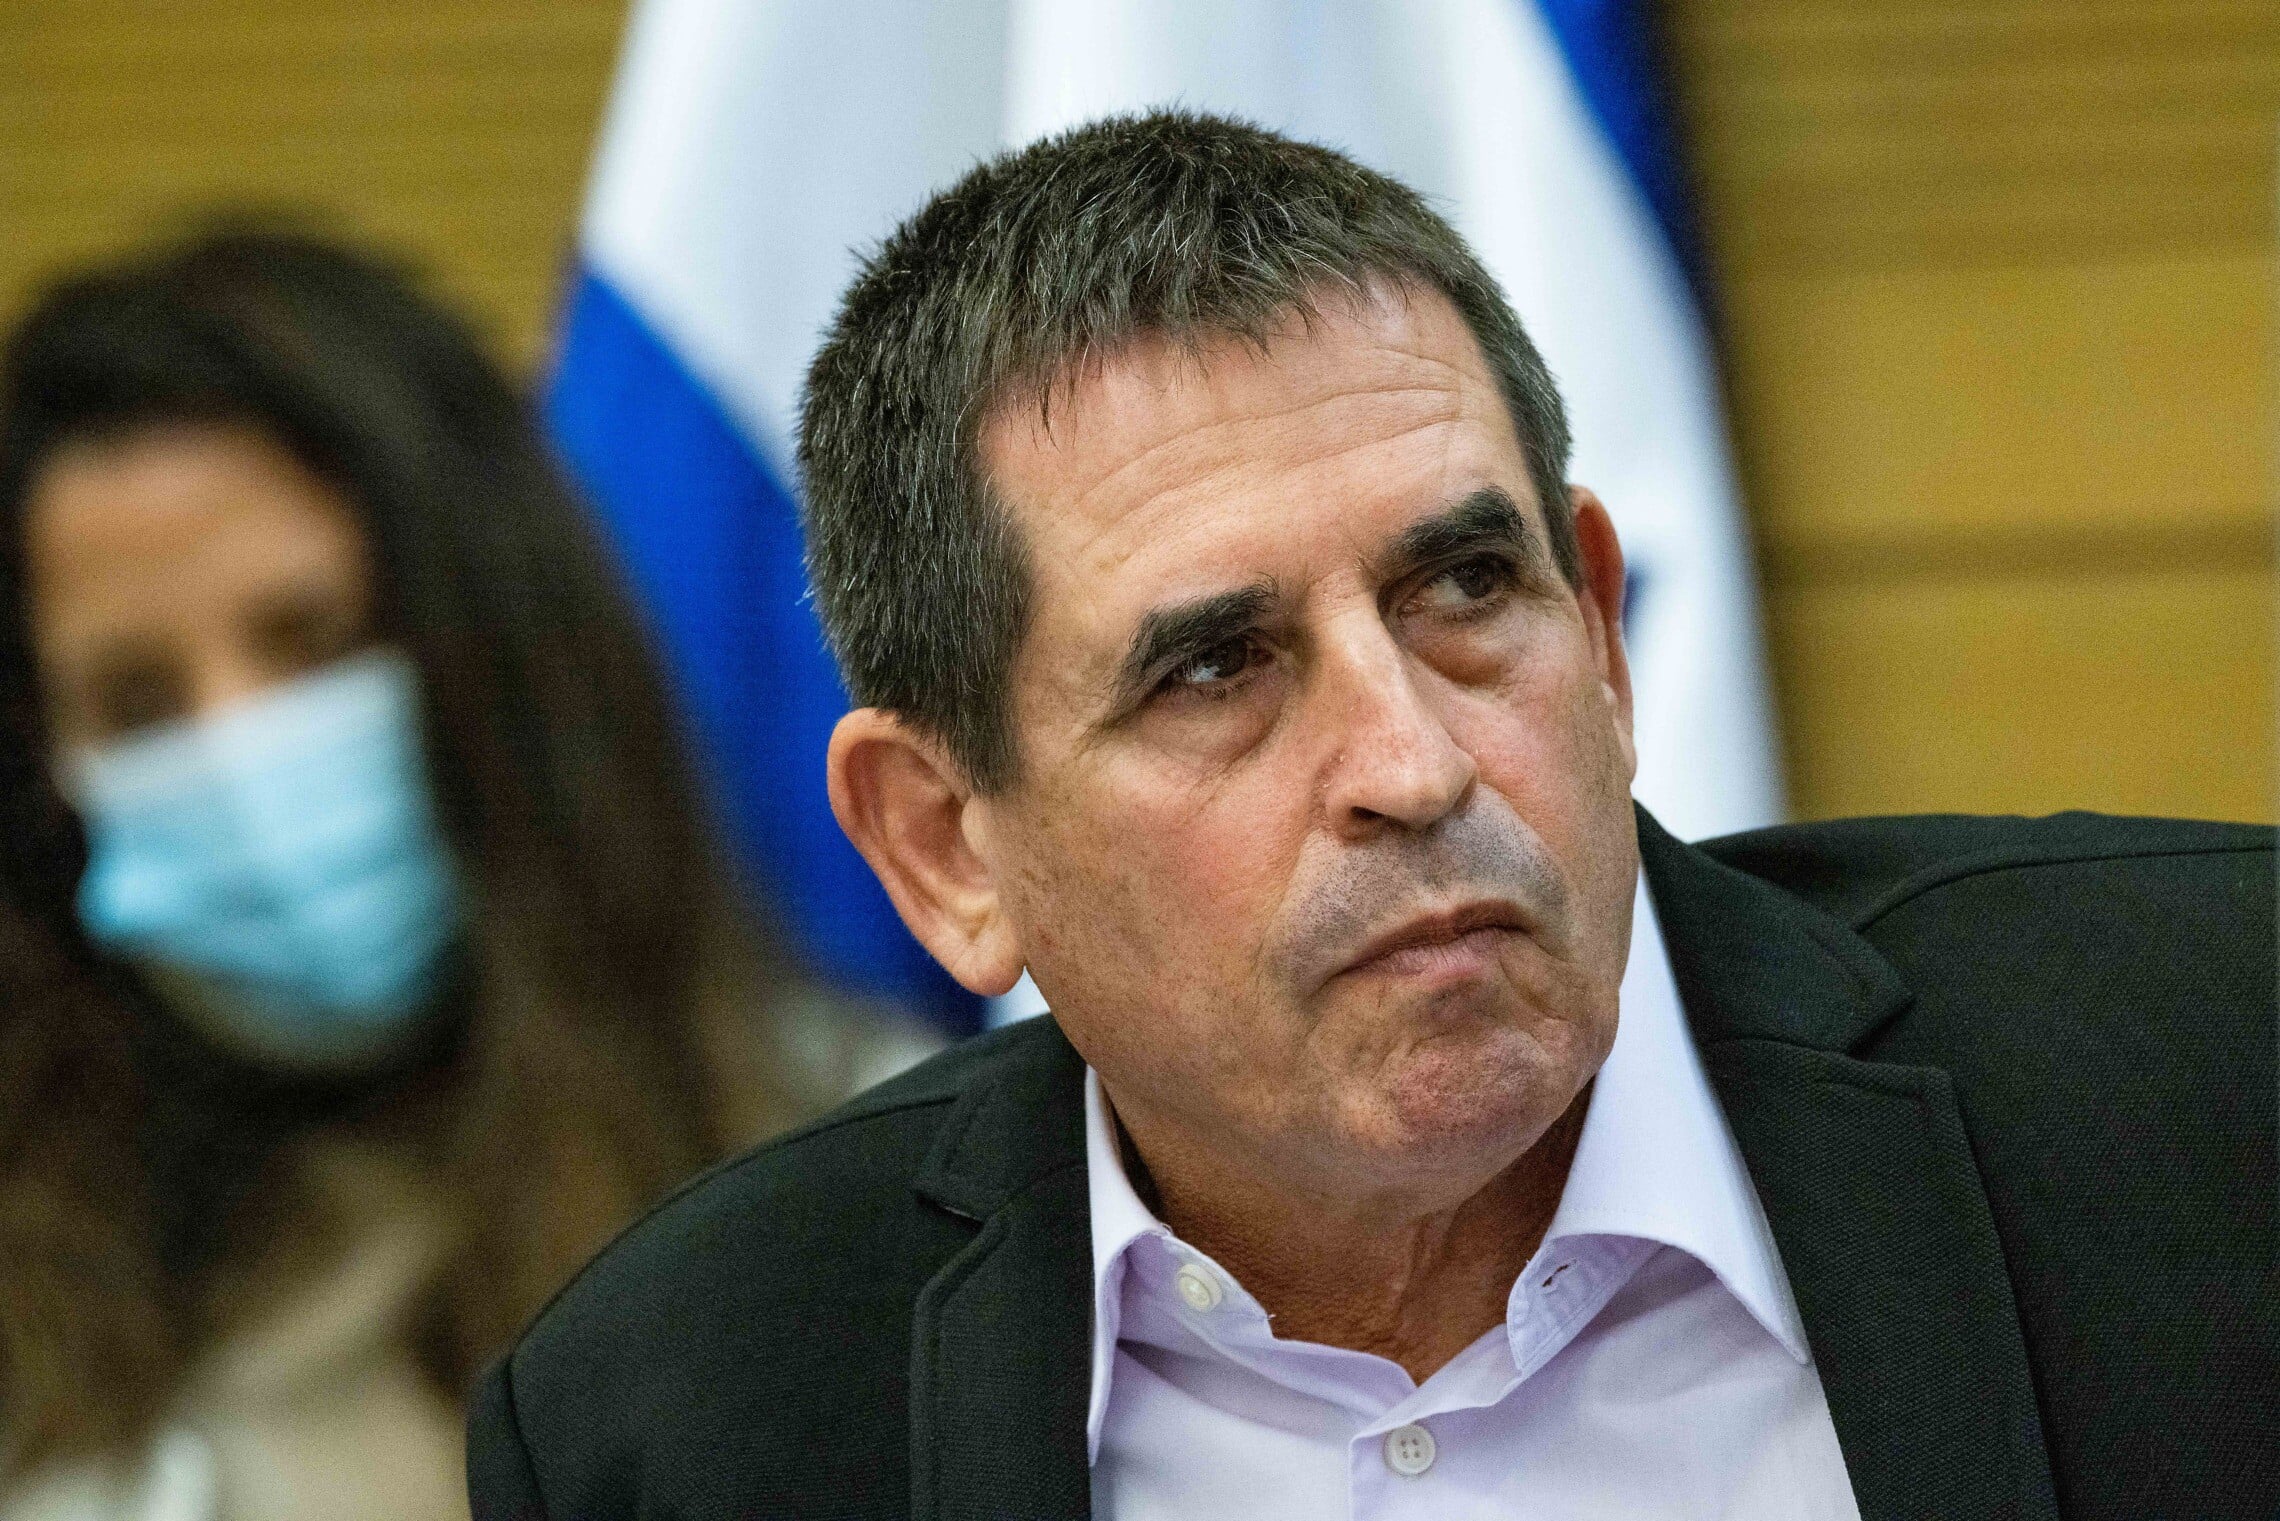 יואב סגלוביץ' בוועדת הפנים של הכנסת, 8 בנובמבר 2021 (צילום: Yonatan Sindel/Flash90)